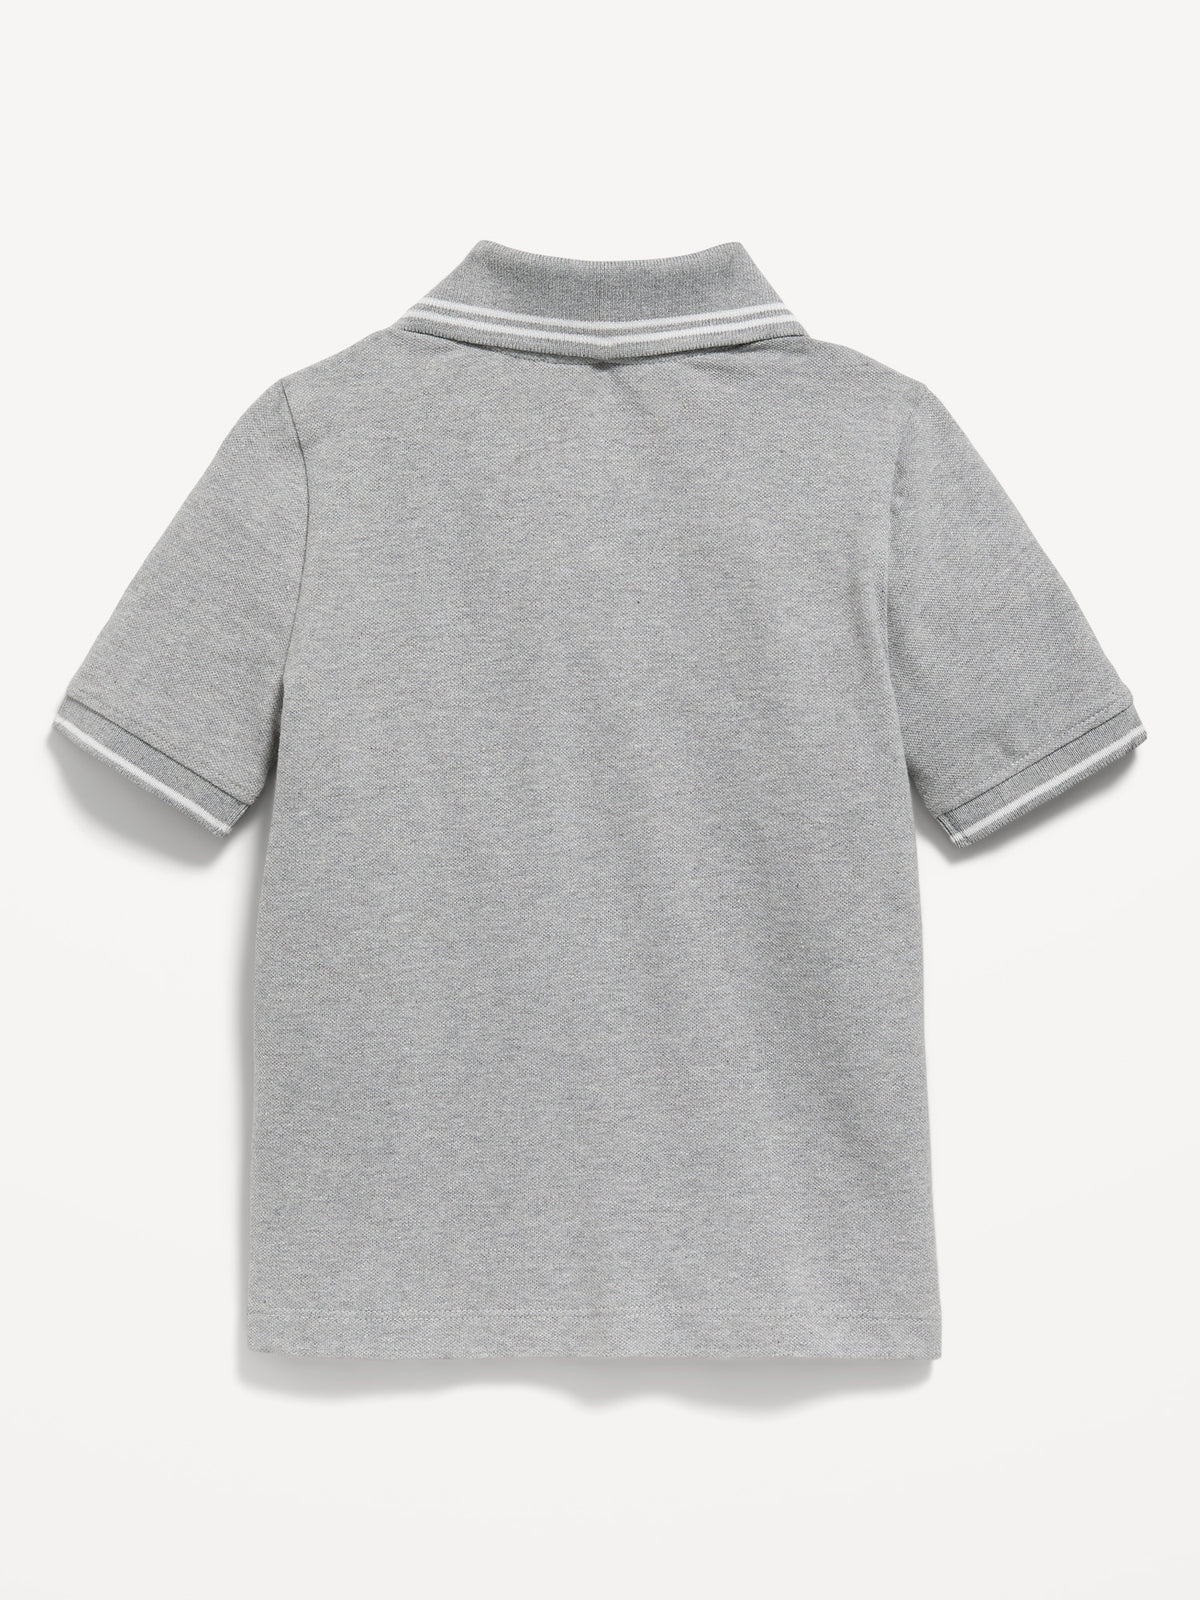 School Uniform Polo Shirt for Toddler Boys